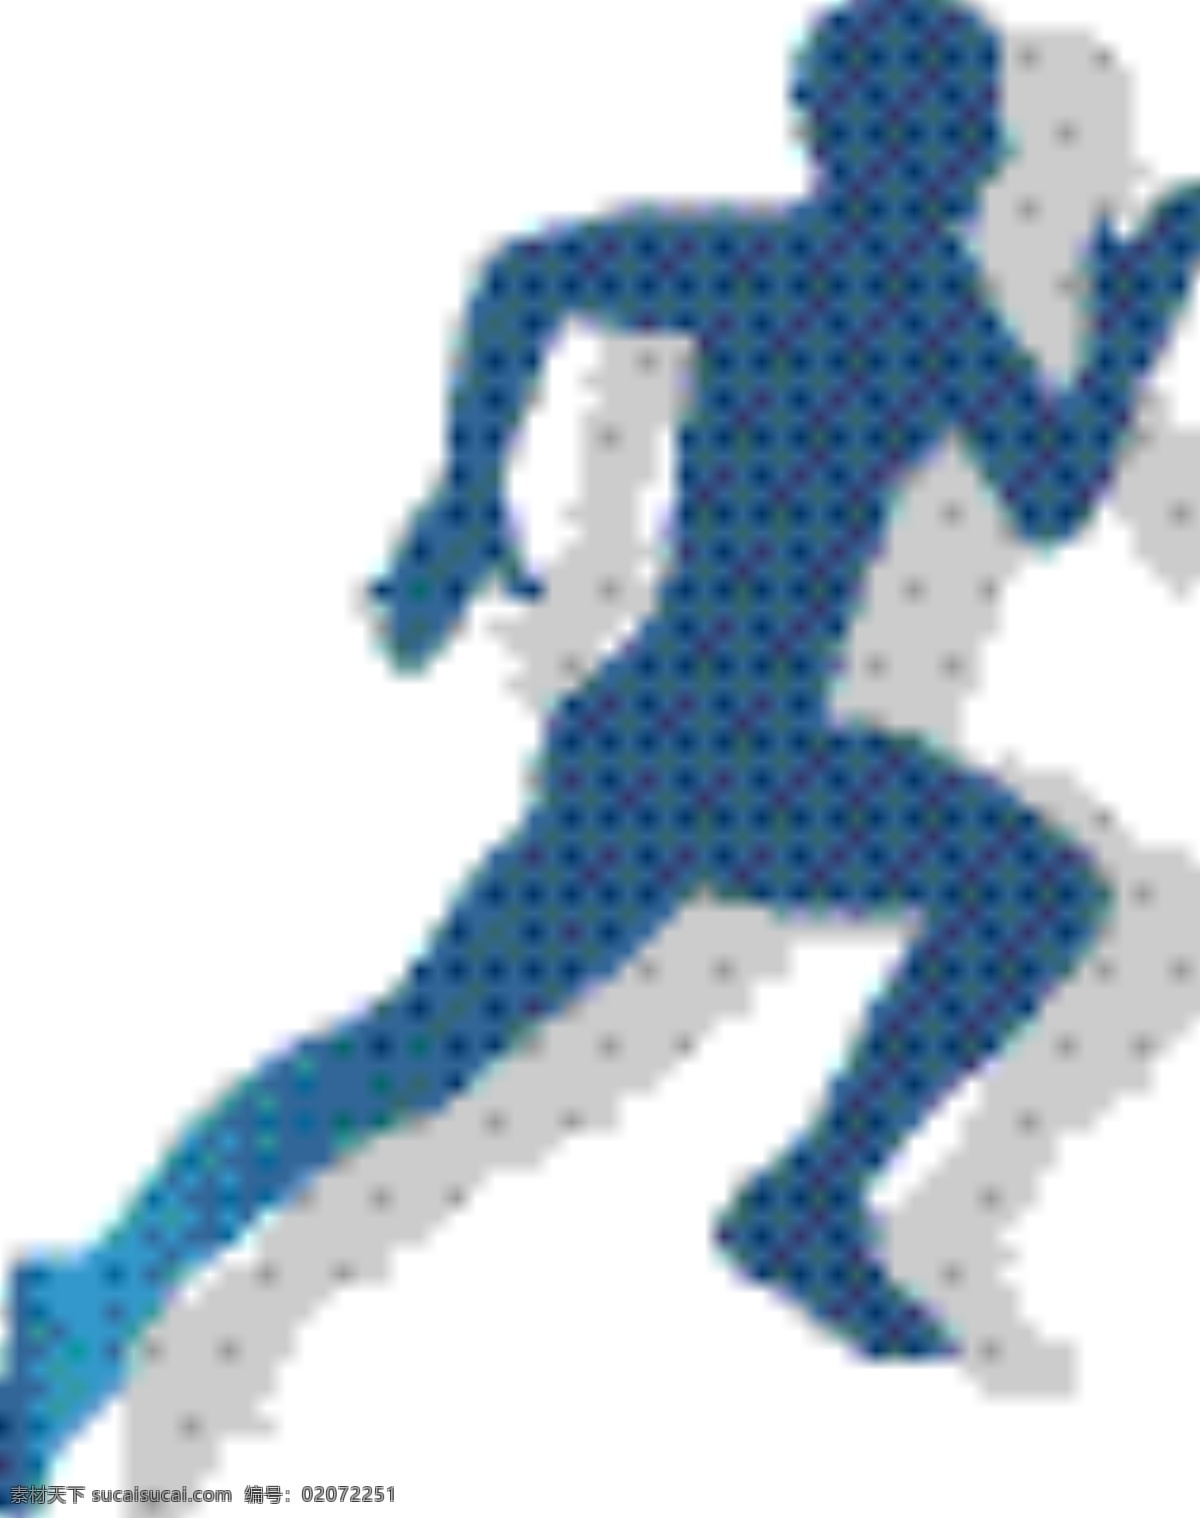 跑步图片 ui 标识 标志 矢量 简约 扁平 人物 体操 锻炼 健身 跳绳 竞走 散步 赛跑 跑步 马步 比赛 奥运会 慢跑 健身房 身体 跳舞 健身器材 器材 标志图标 网页小图标